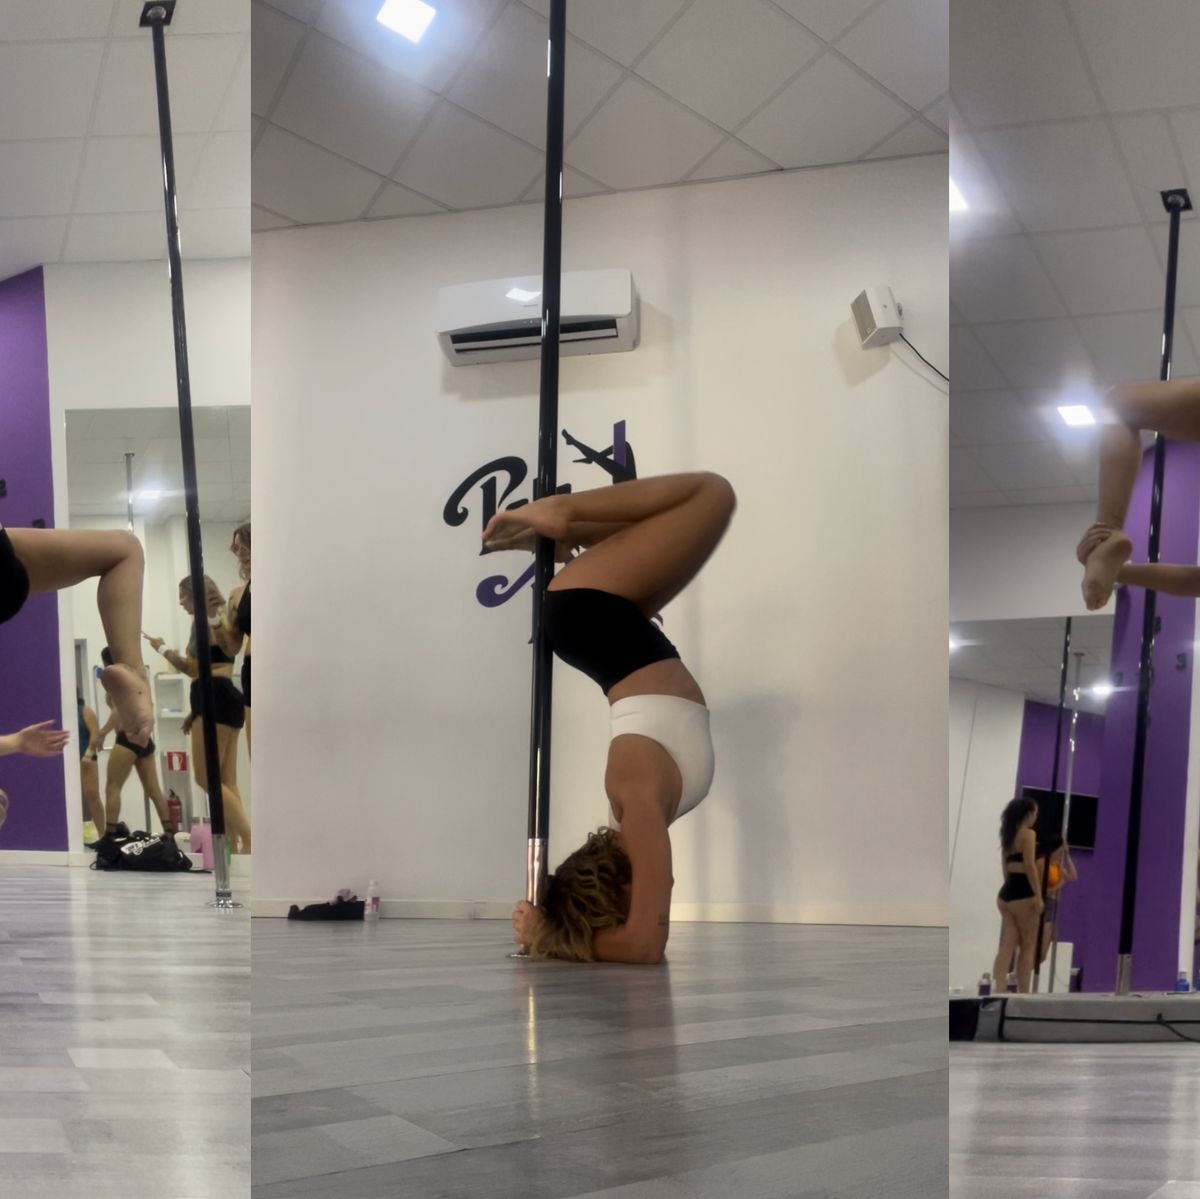 He probado a hacer pole dance durante un mes: mi experiencia